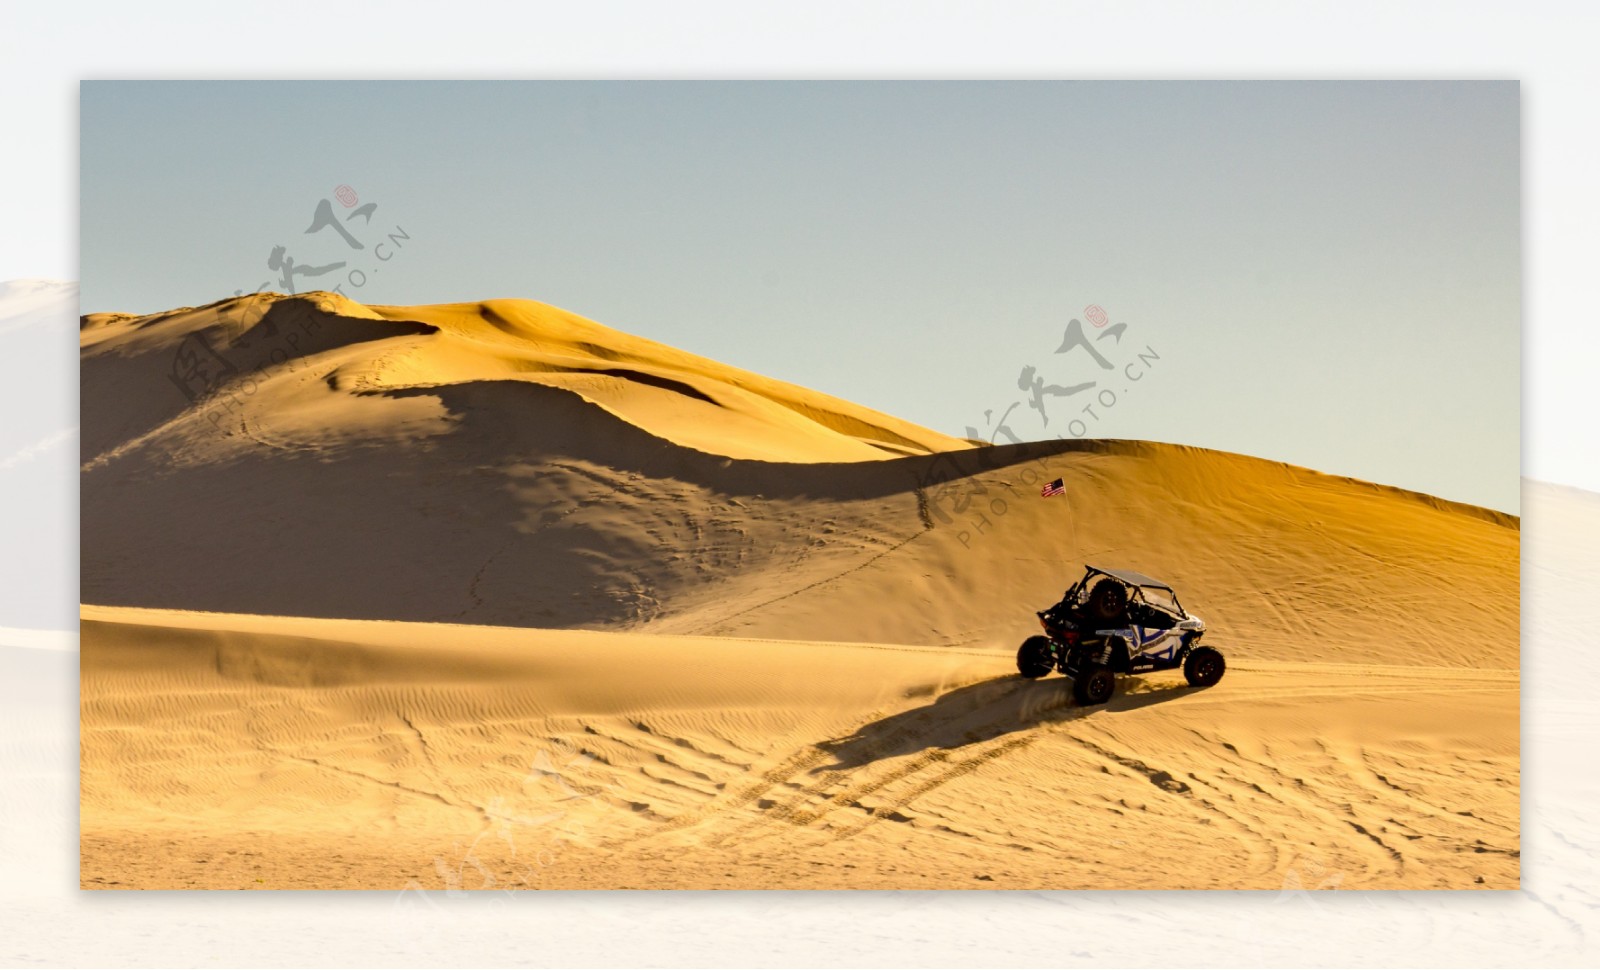 越野车在沙漠